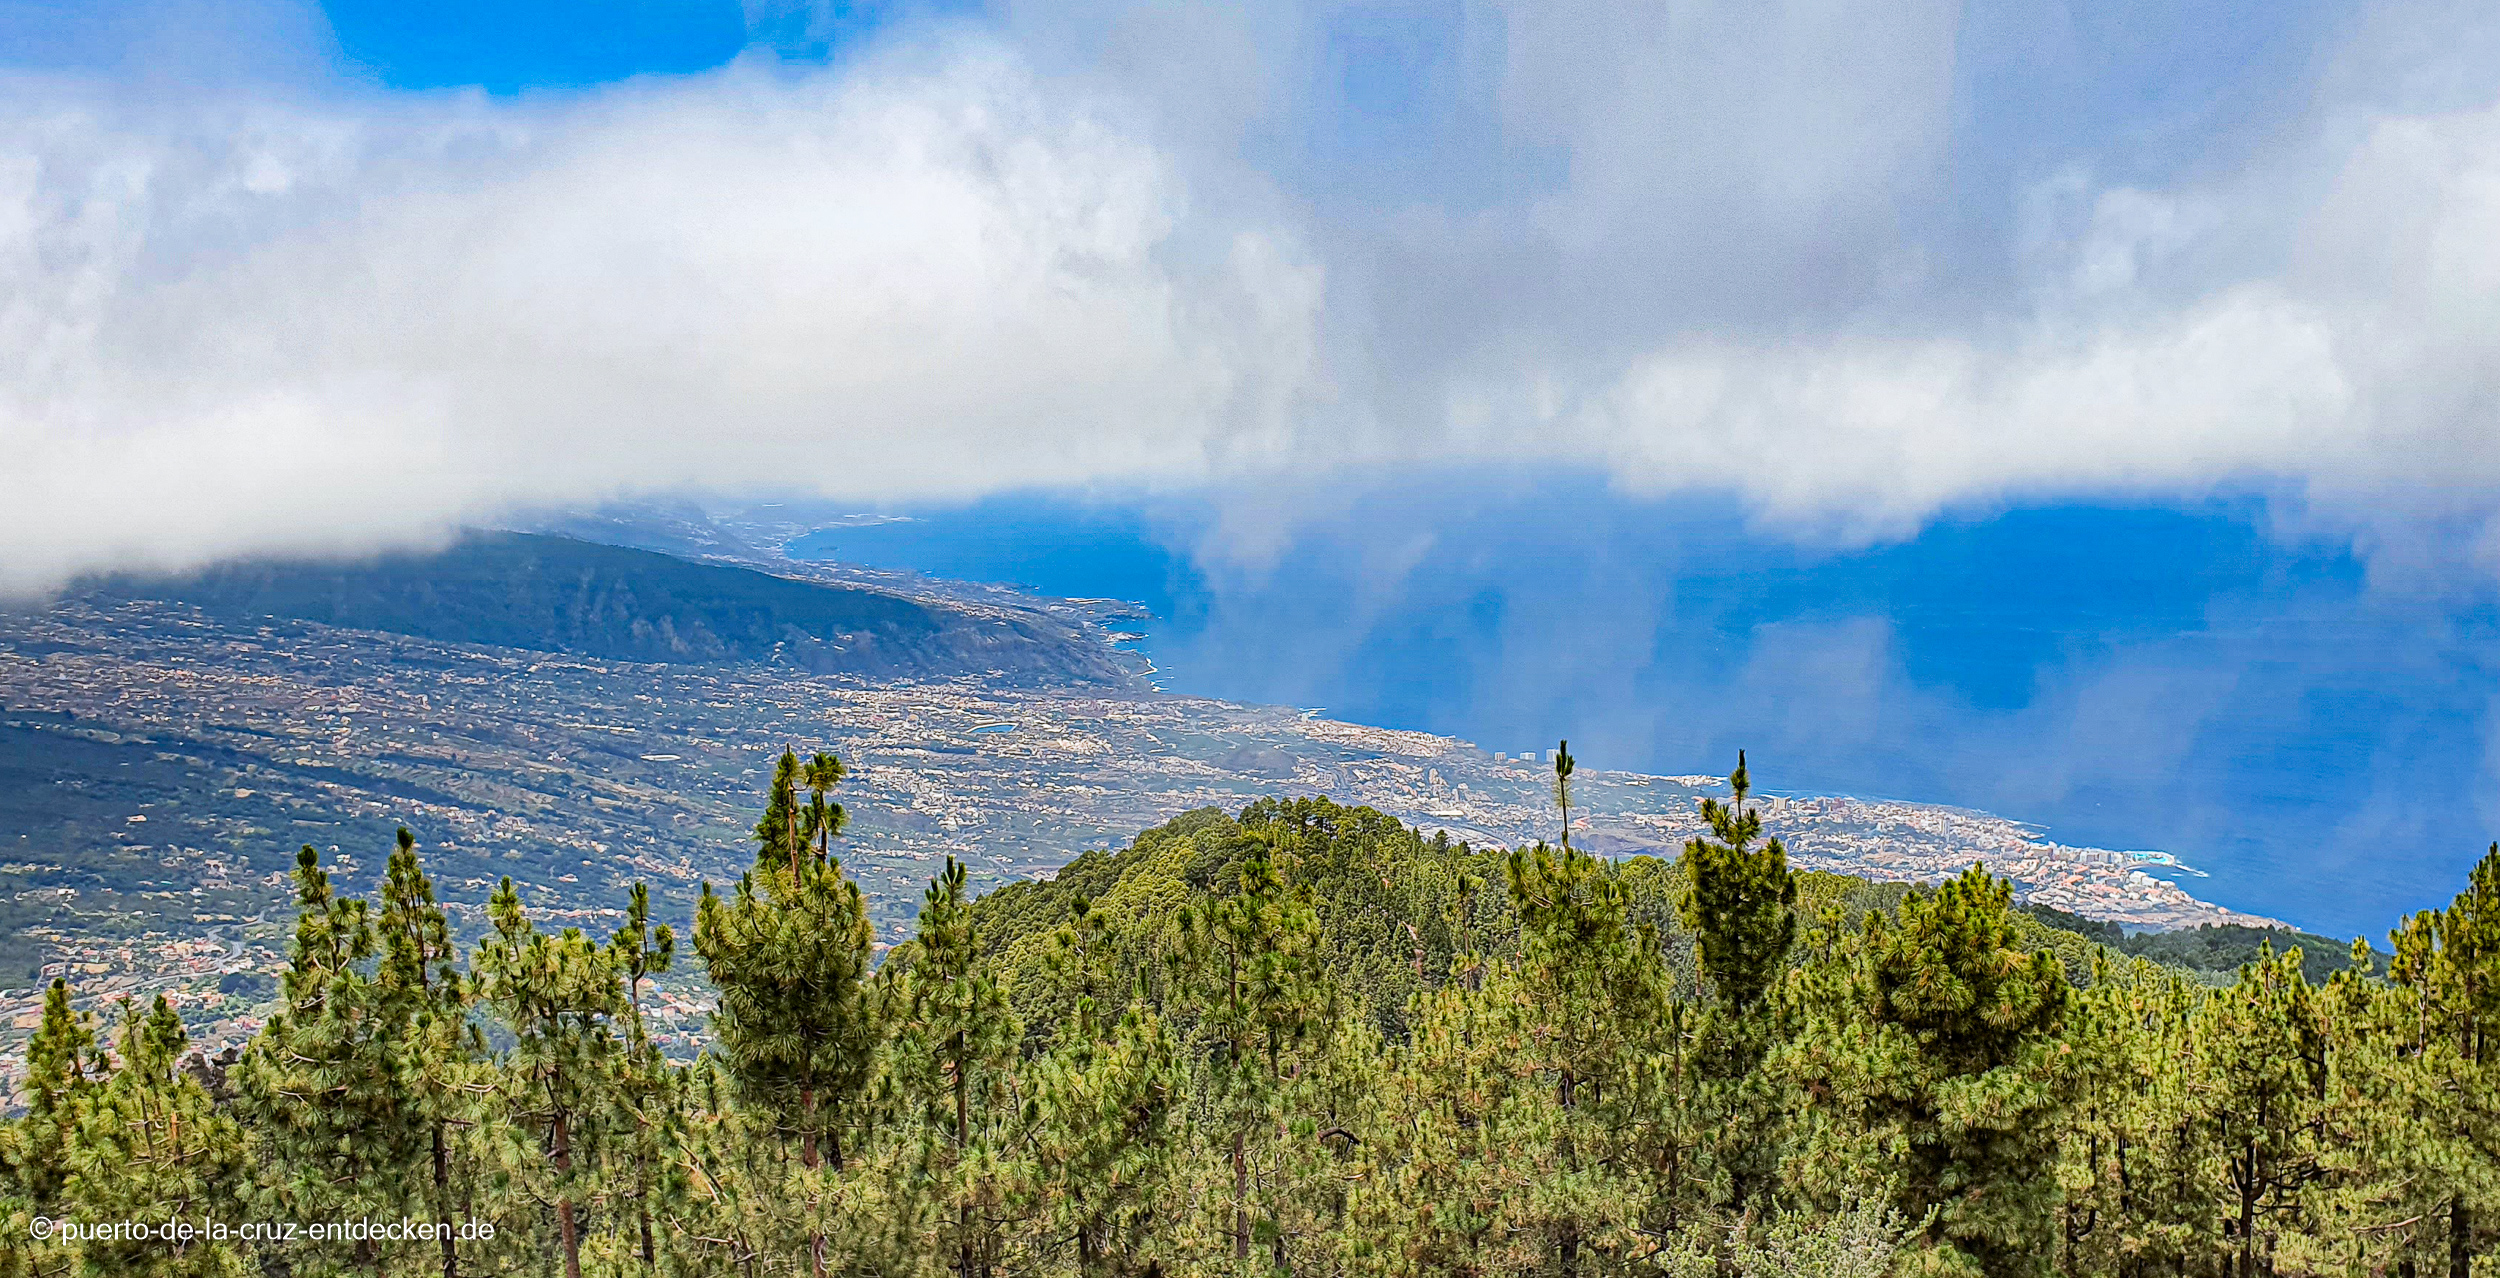 Von weiter oben wird sichtbar, wie dicht besiedelt das Valle de la Orotava mittlerweile ist.